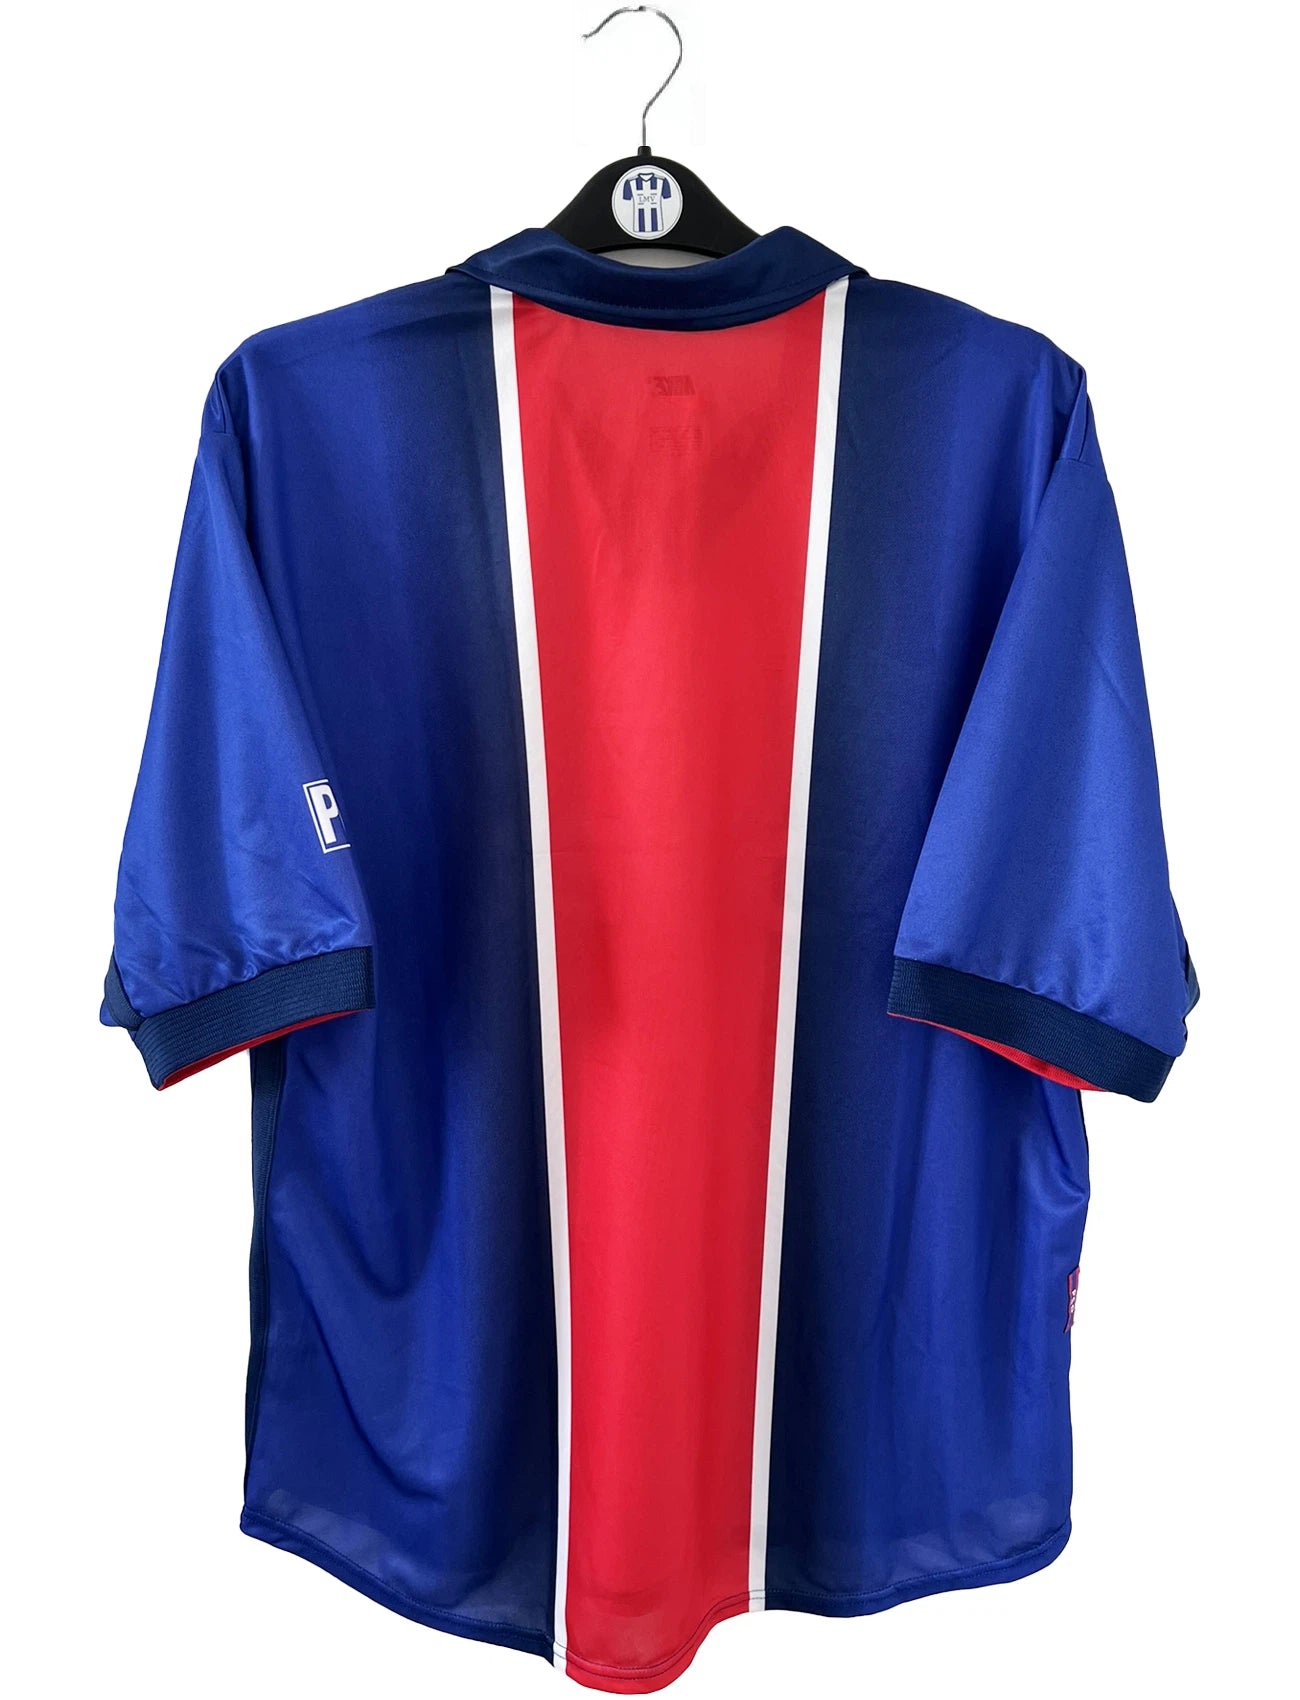 Maillot de foot vintage domicile du PSG de la saison 1998/1999. Le maillot est de couleur bleu blanc et rouge. On peut retrouver l'équipementier nike et le sponsor opel. Il s'agit d'un maillot authentique d'époque.